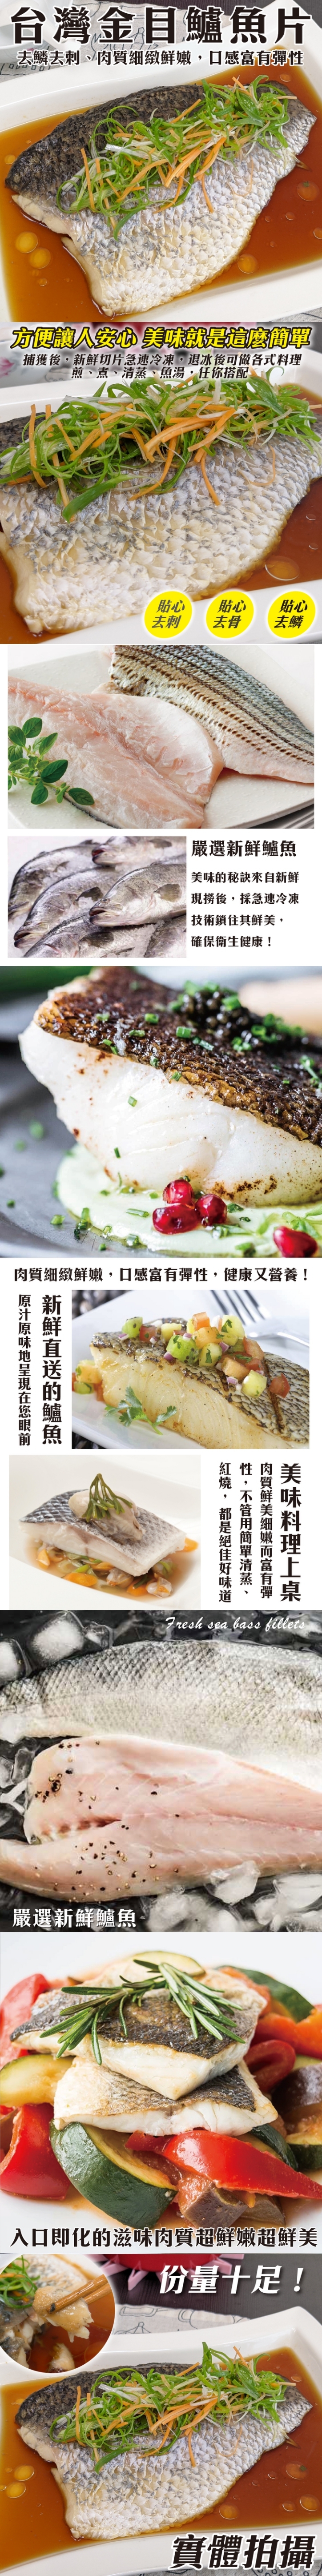 【池鮮生】嚴選鮮嫩金目鱸魚片 清肉排30片組(200g-250g/片)